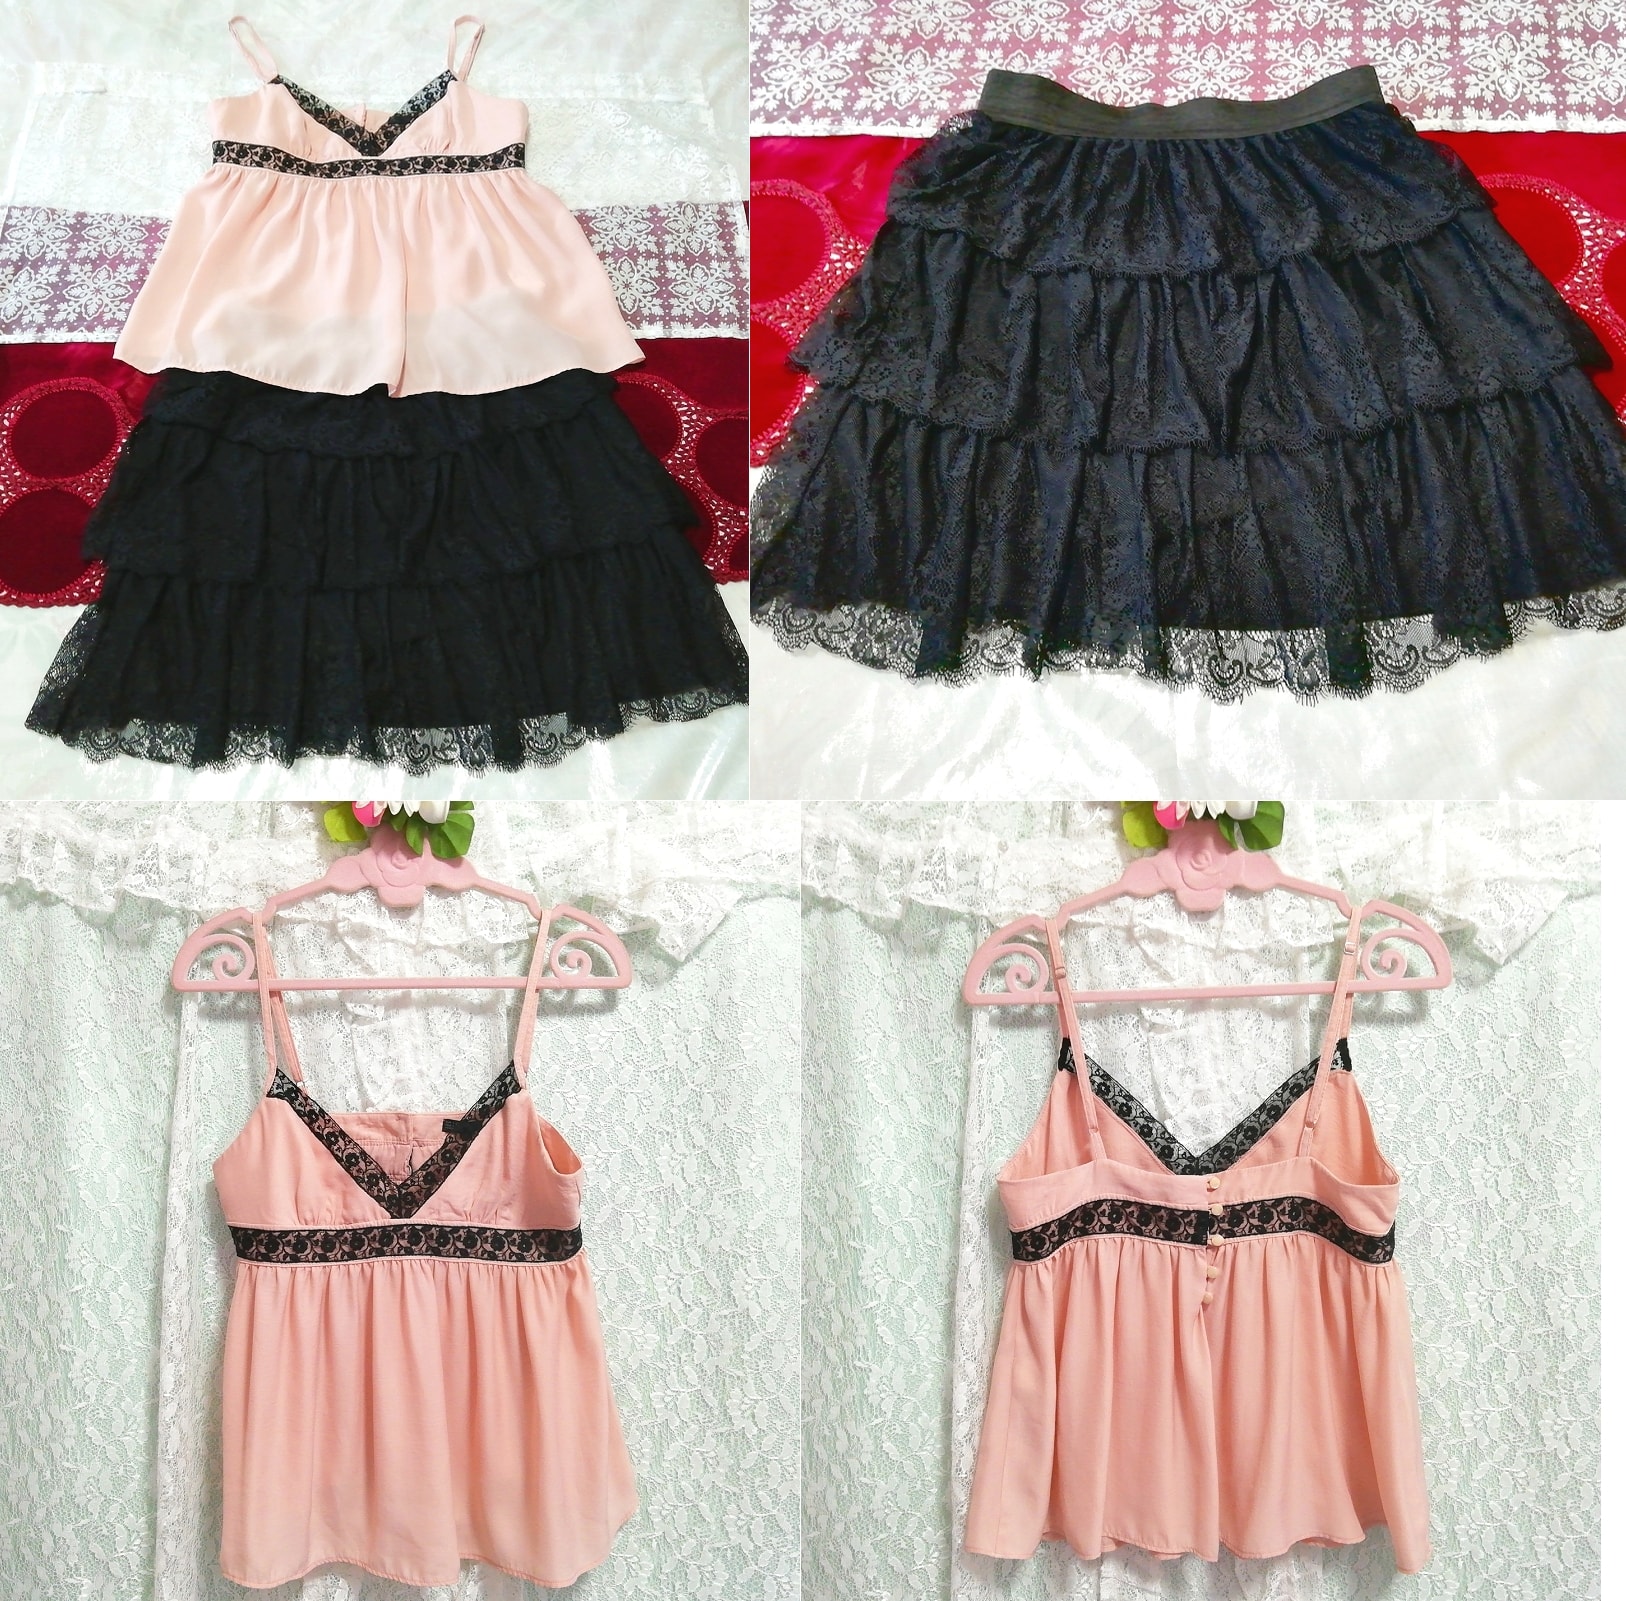 Rosa-schwarzes Spitzen-Negligé-Nachthemd, schwarzer Spitzen-Rüschenrock, 2 Stück, Mode, Frauenmode, Nachtwäsche, Pyjama